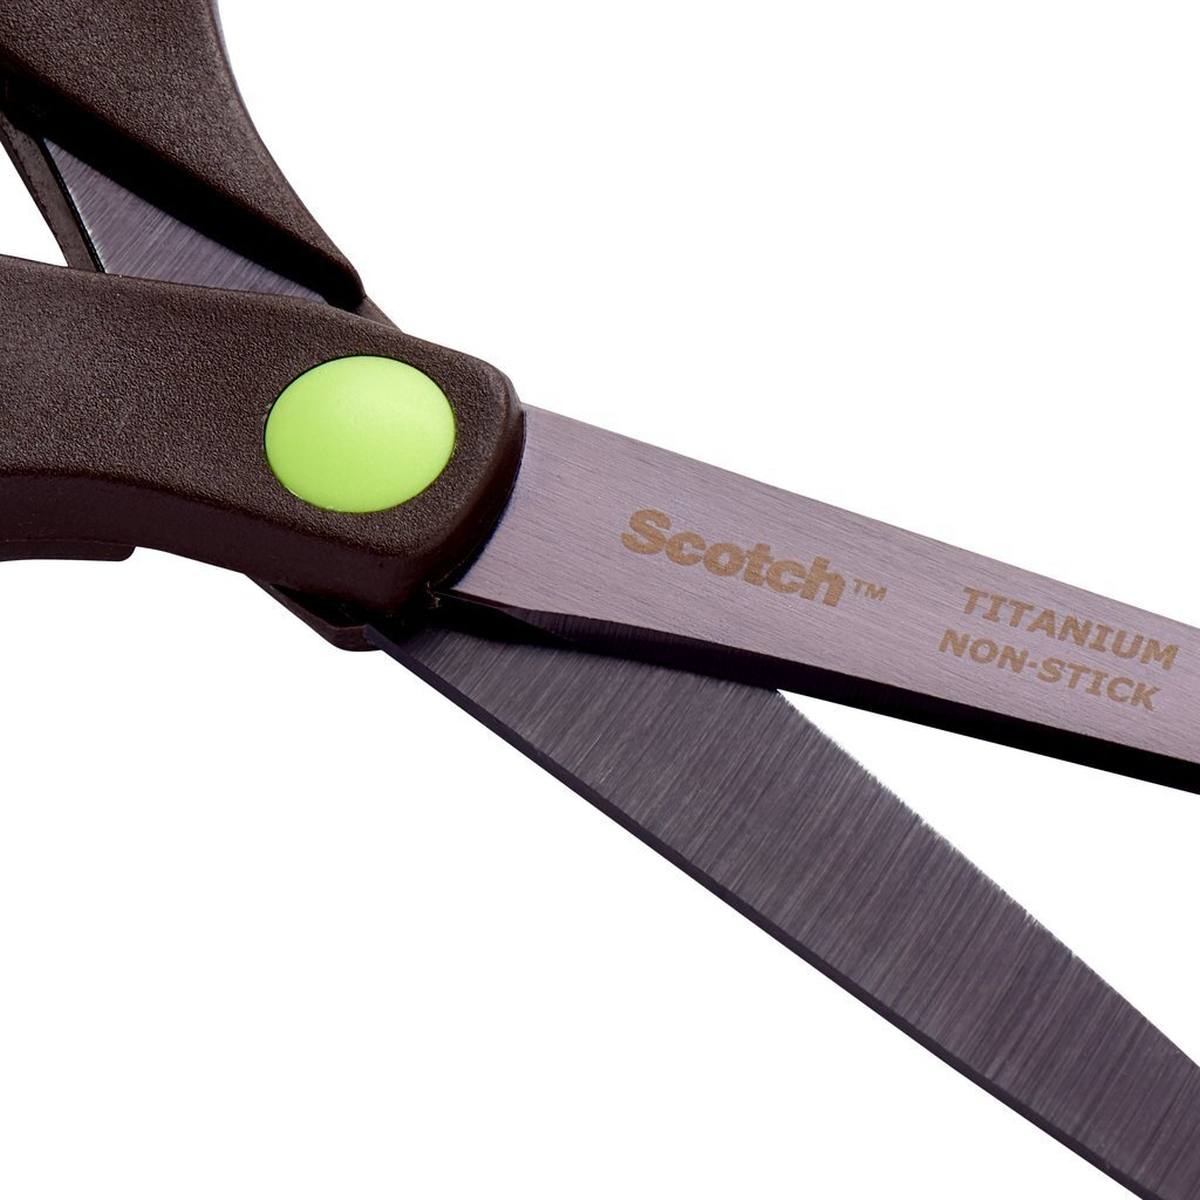 3M Scotch Titanium Scissors 1468TMX, 7 cm x 1.5 cm x 20 cm, dark brown